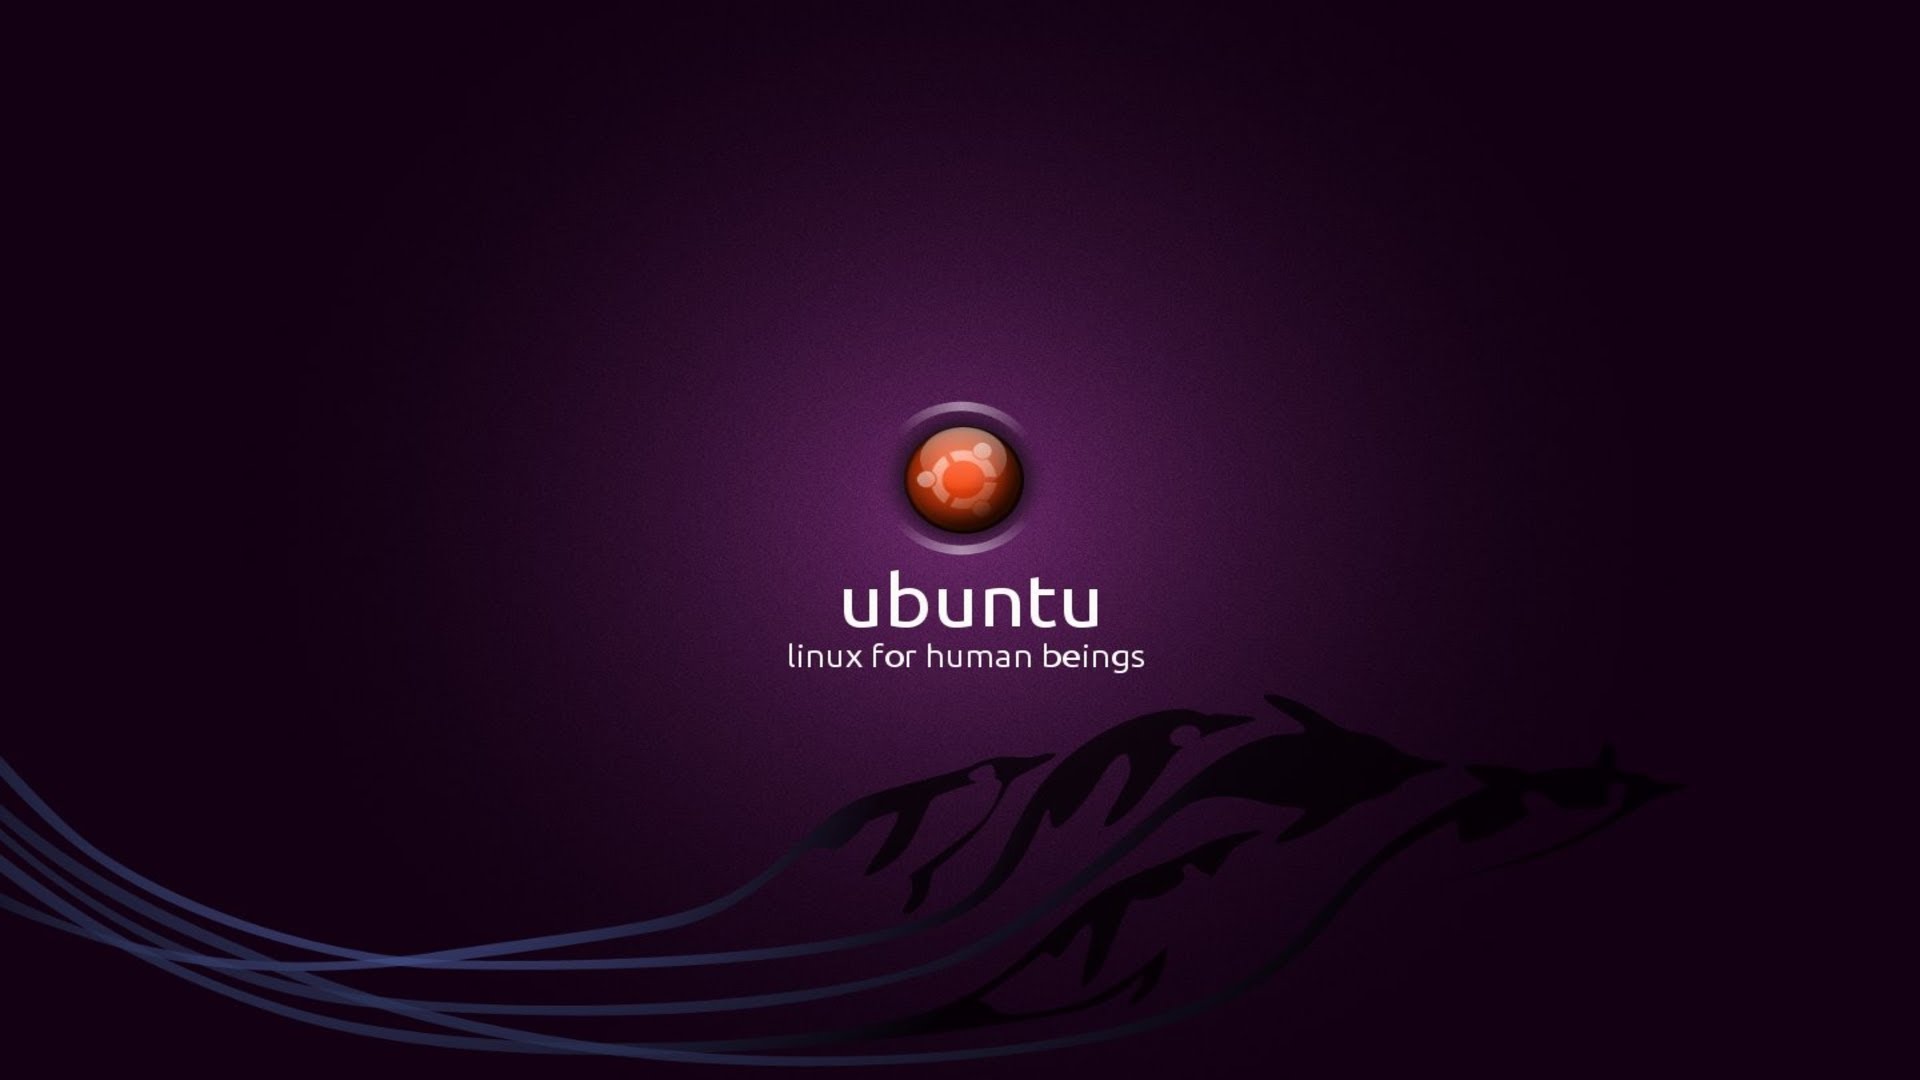 Ubuntu User How To Change Wallpaper And Desktop Behavior In